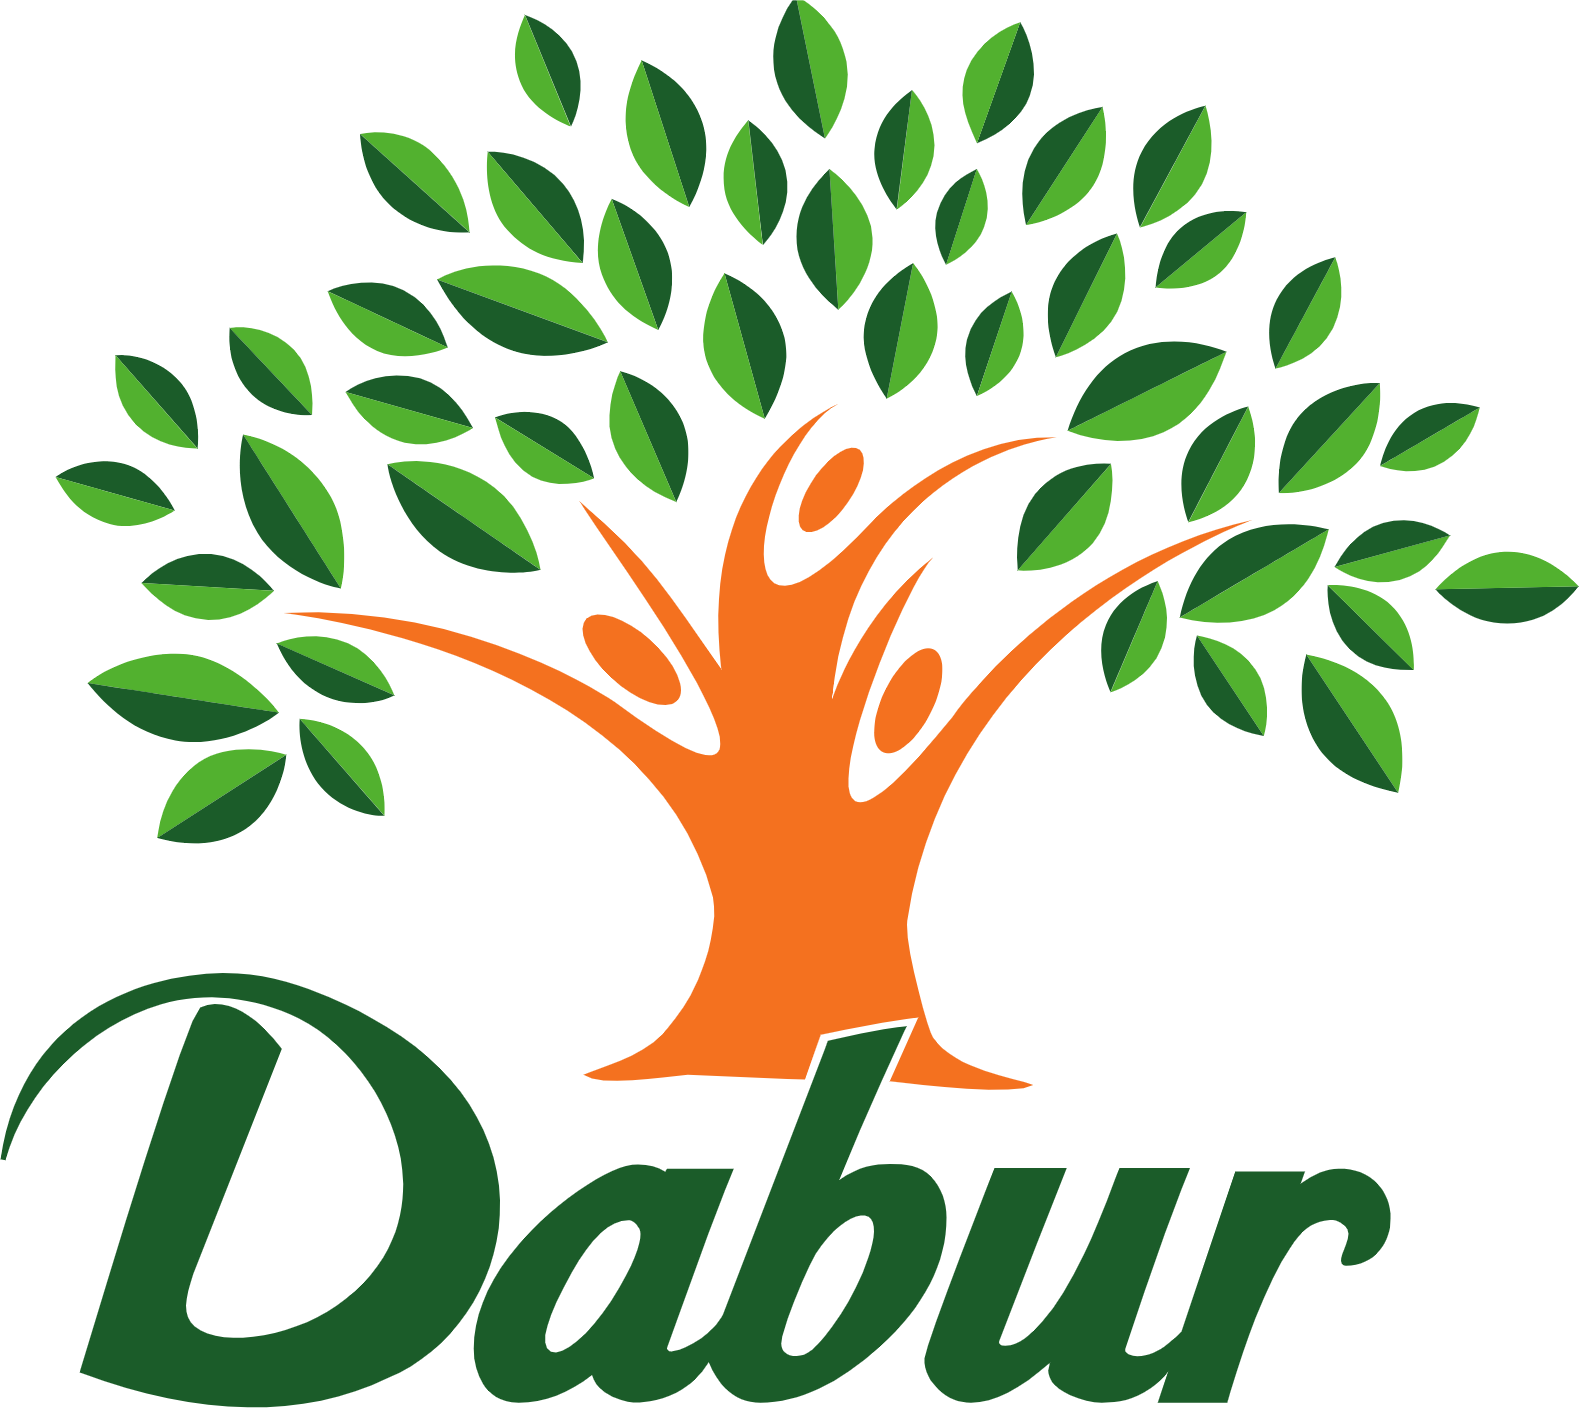 Dabur logo in transparent PNG format